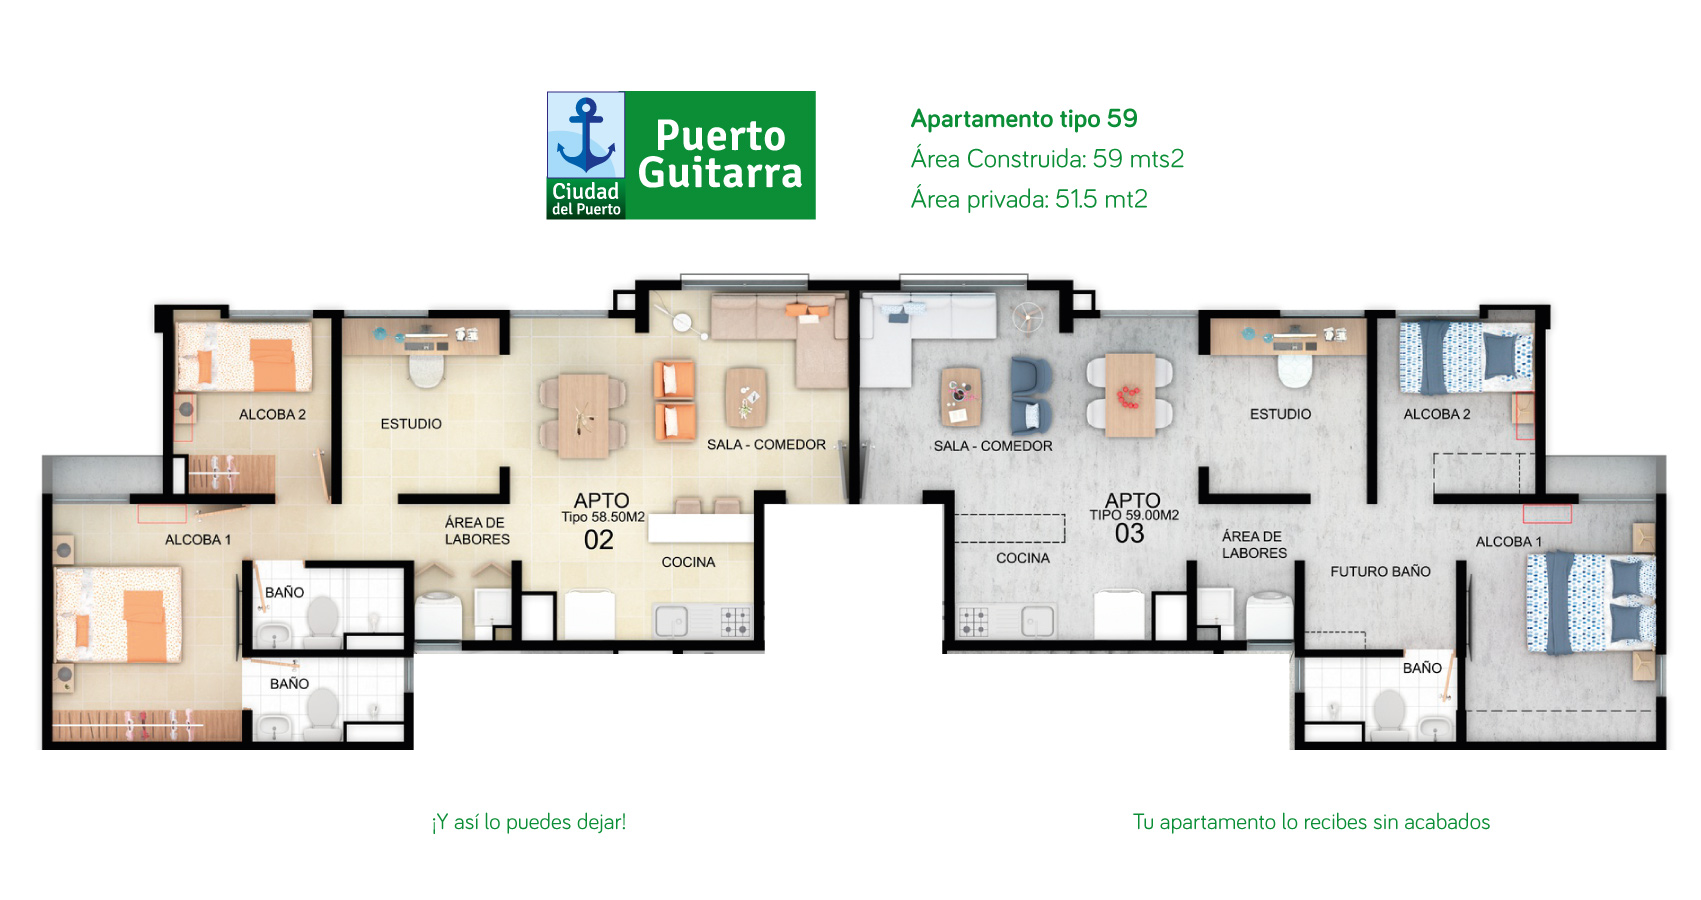 Puerto Guitarra, proyecto de apartamentos en Soledad - Atlantico, subsidio de vivienda.